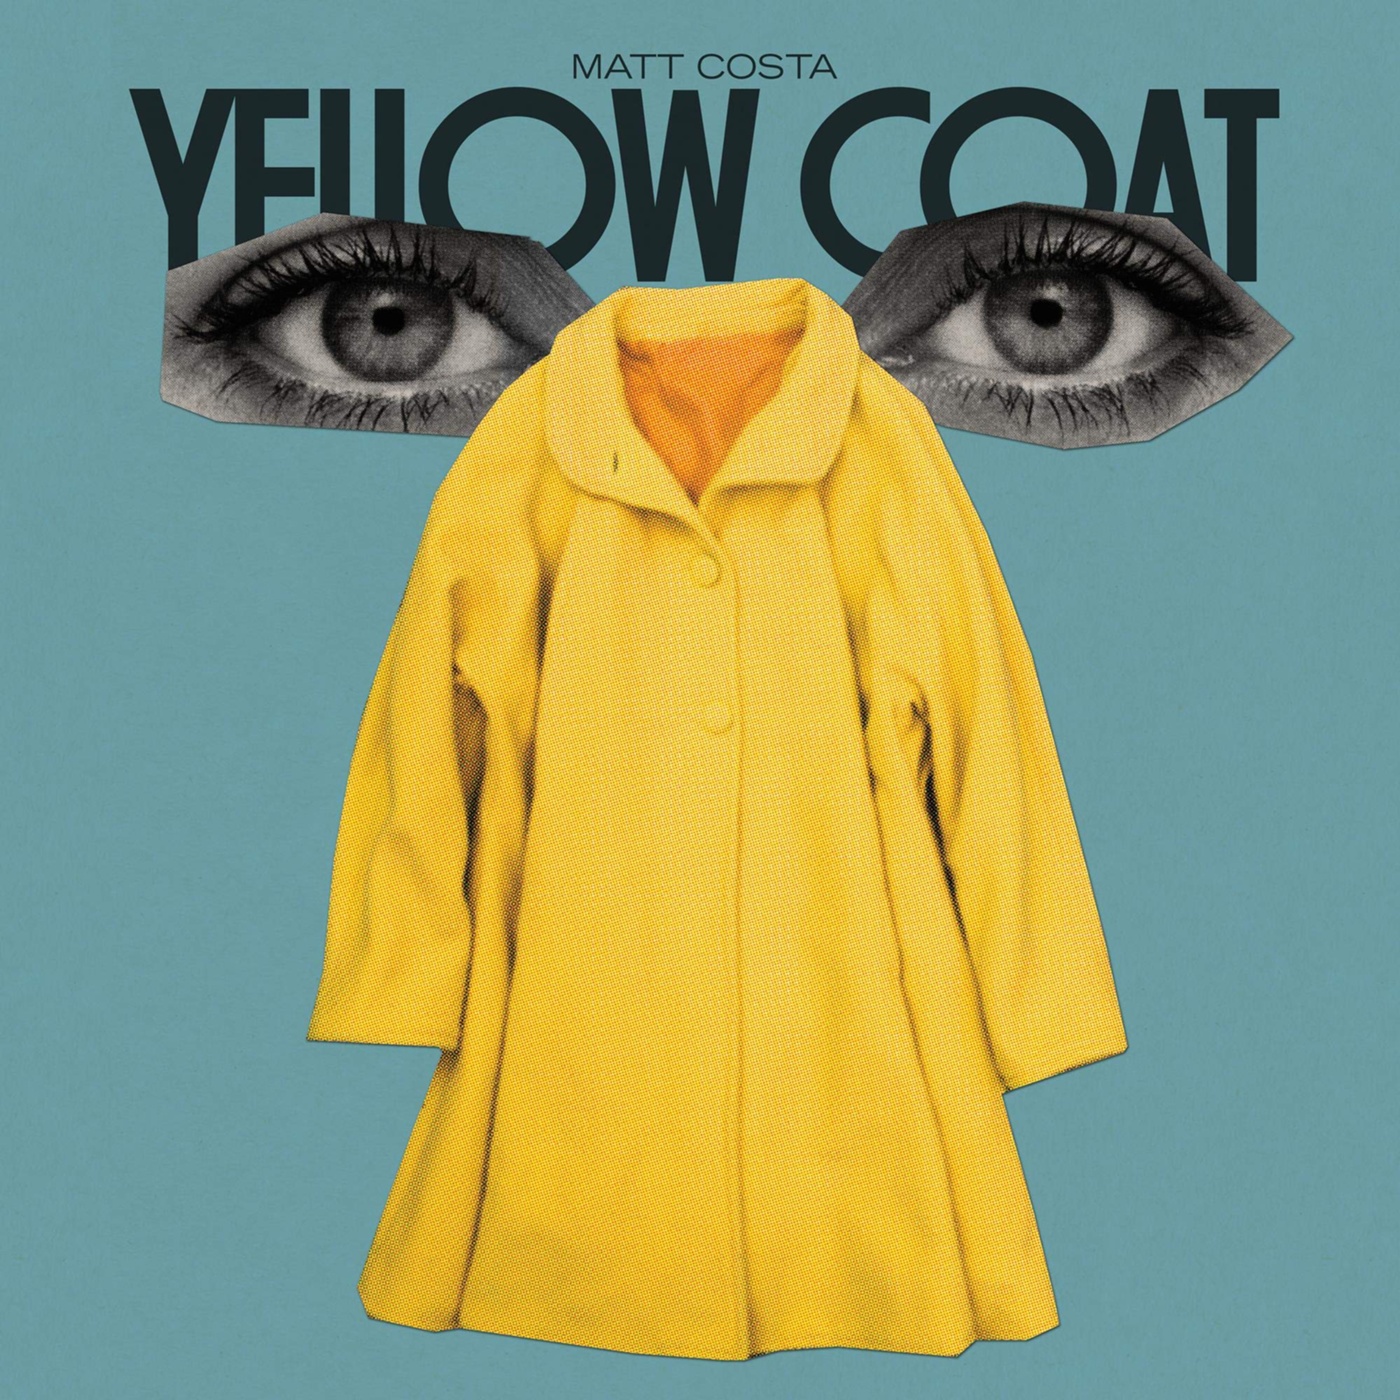 Matt costa. Альбом Еллоу. Steppin out Yellow Coat.